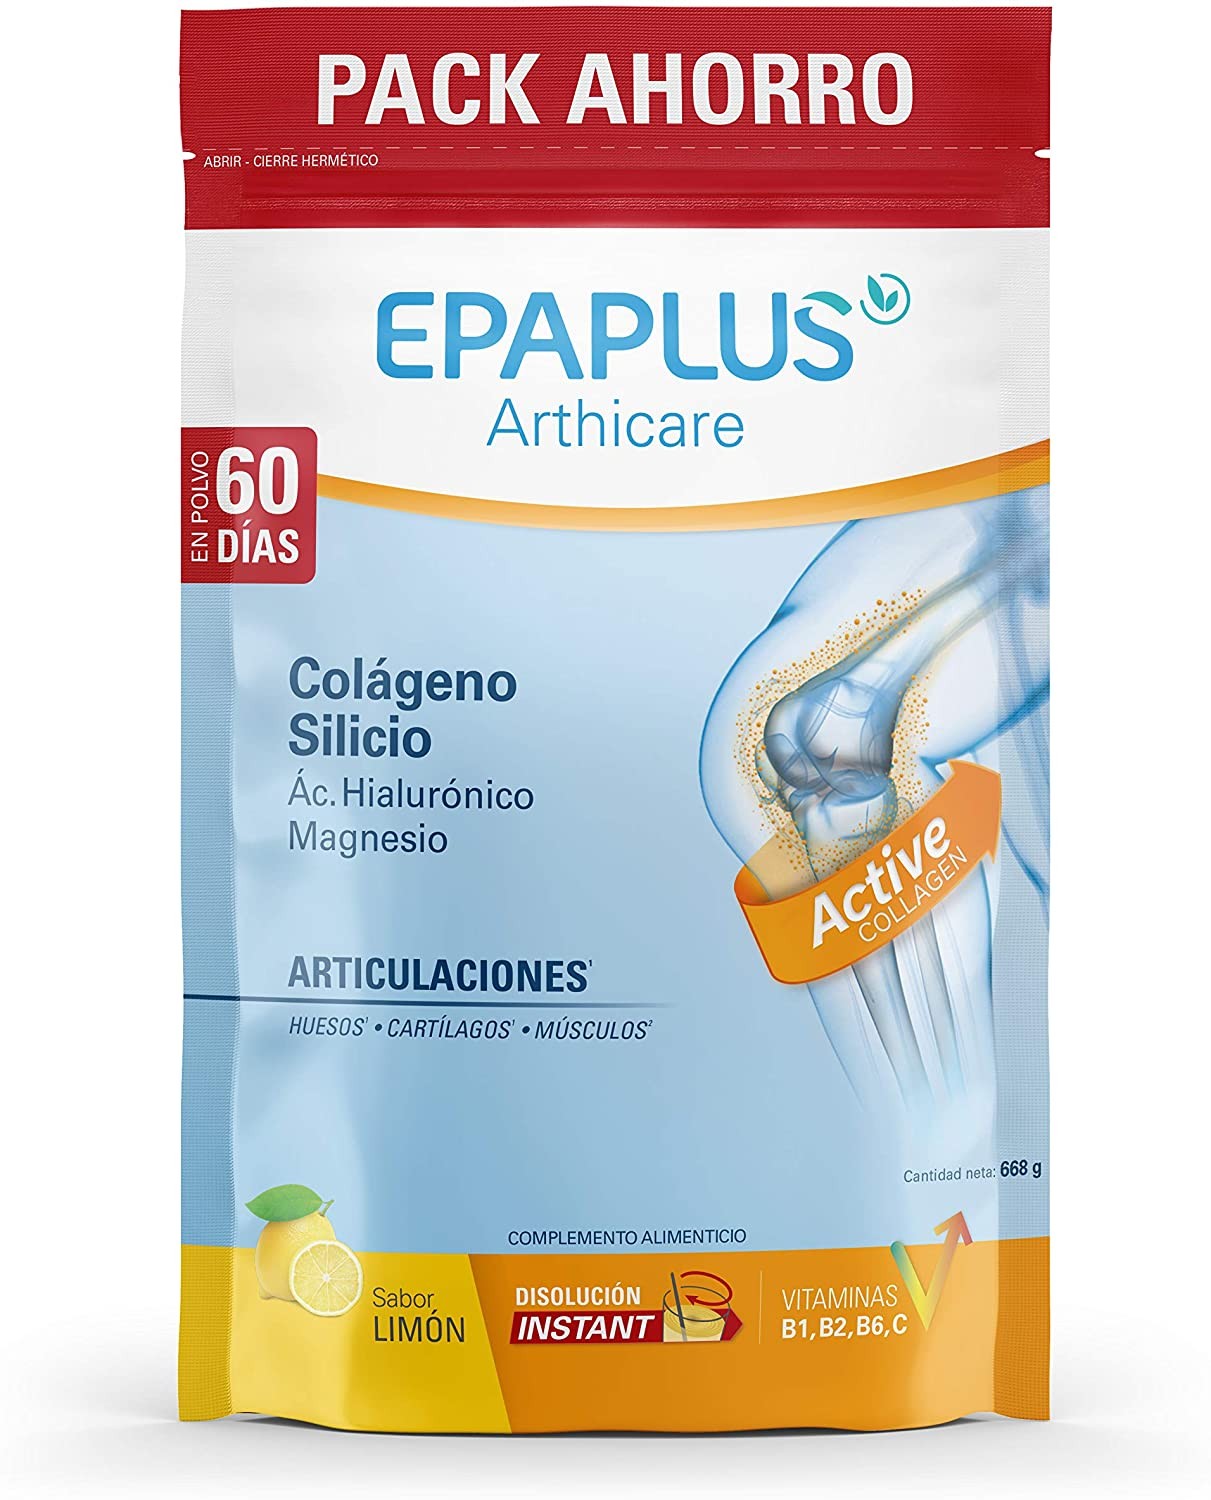 Epaplus Arthicare sabor neutro 30+30 días - Farmacia Sarasketa